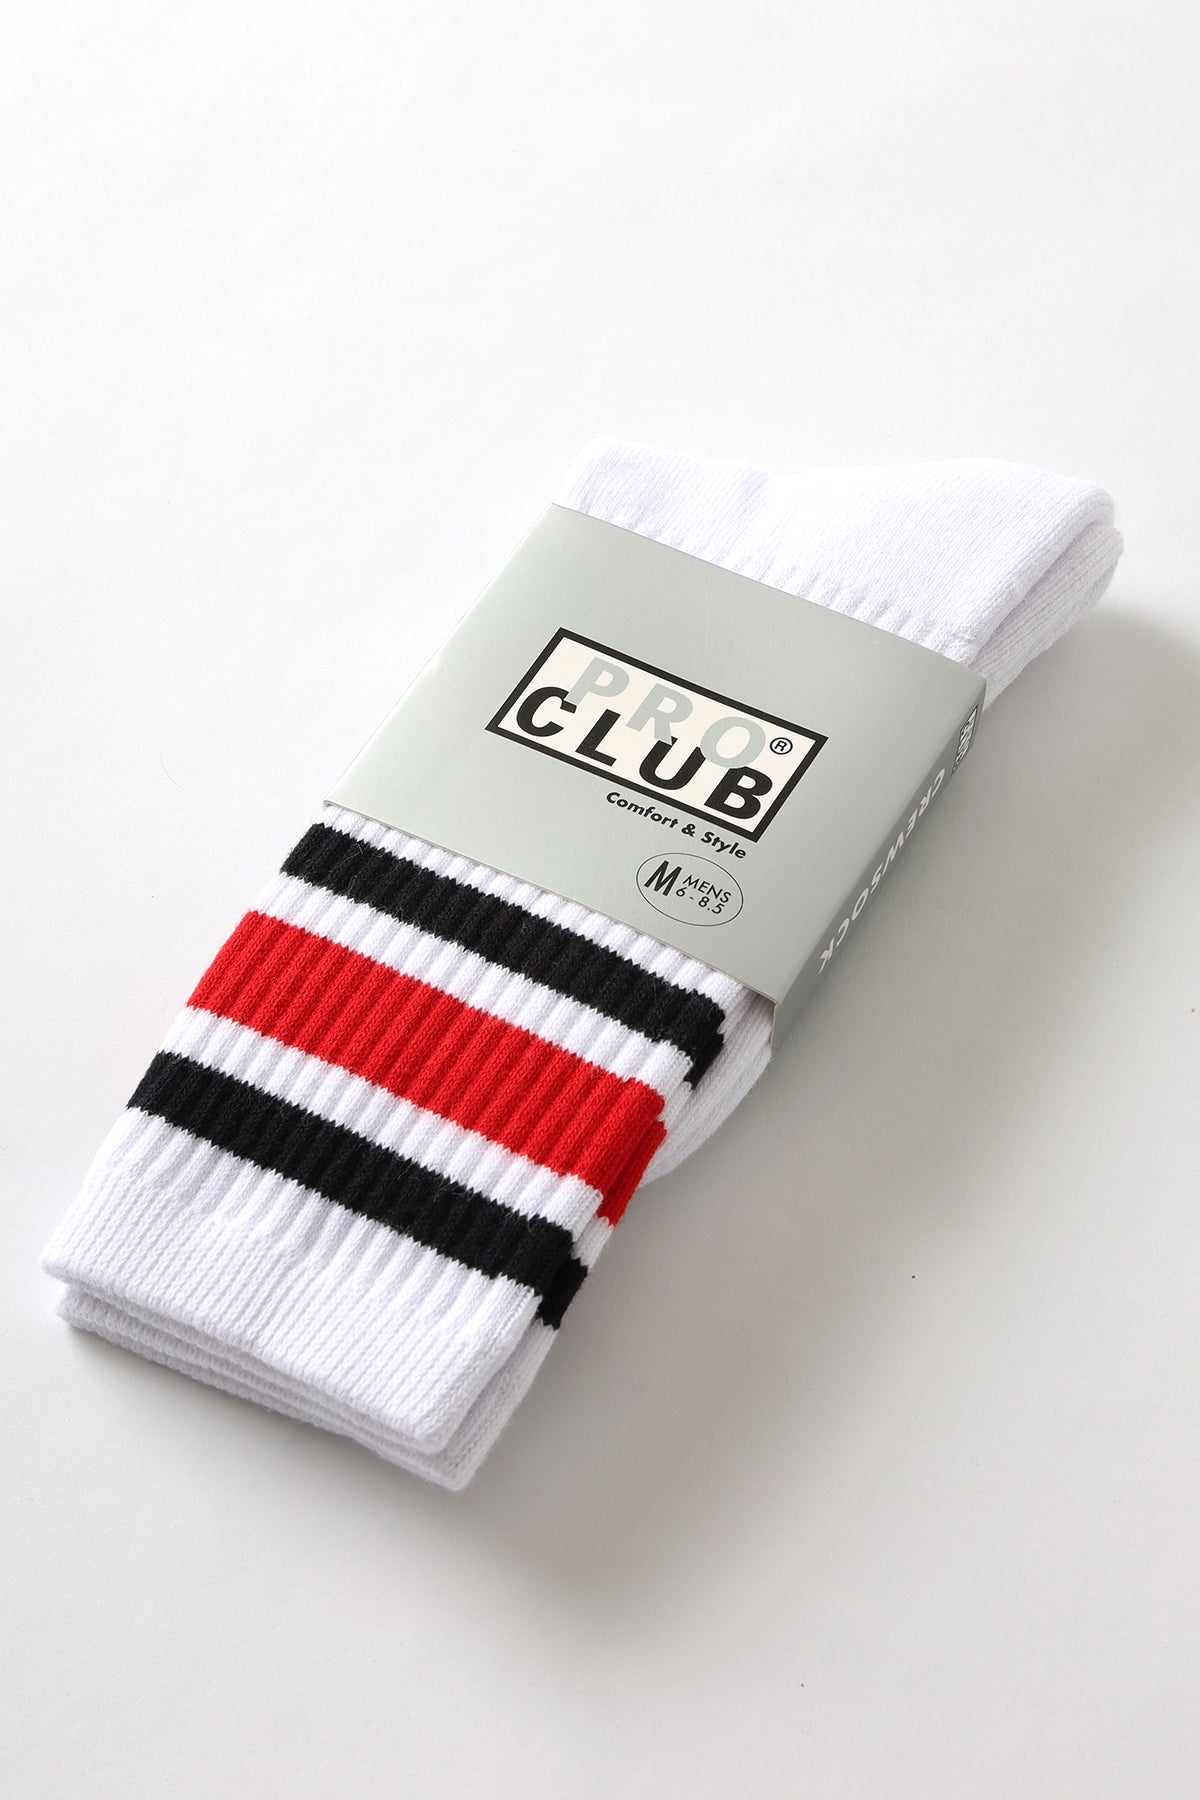 Pro Club - Striped Crew Socks - Red/Black